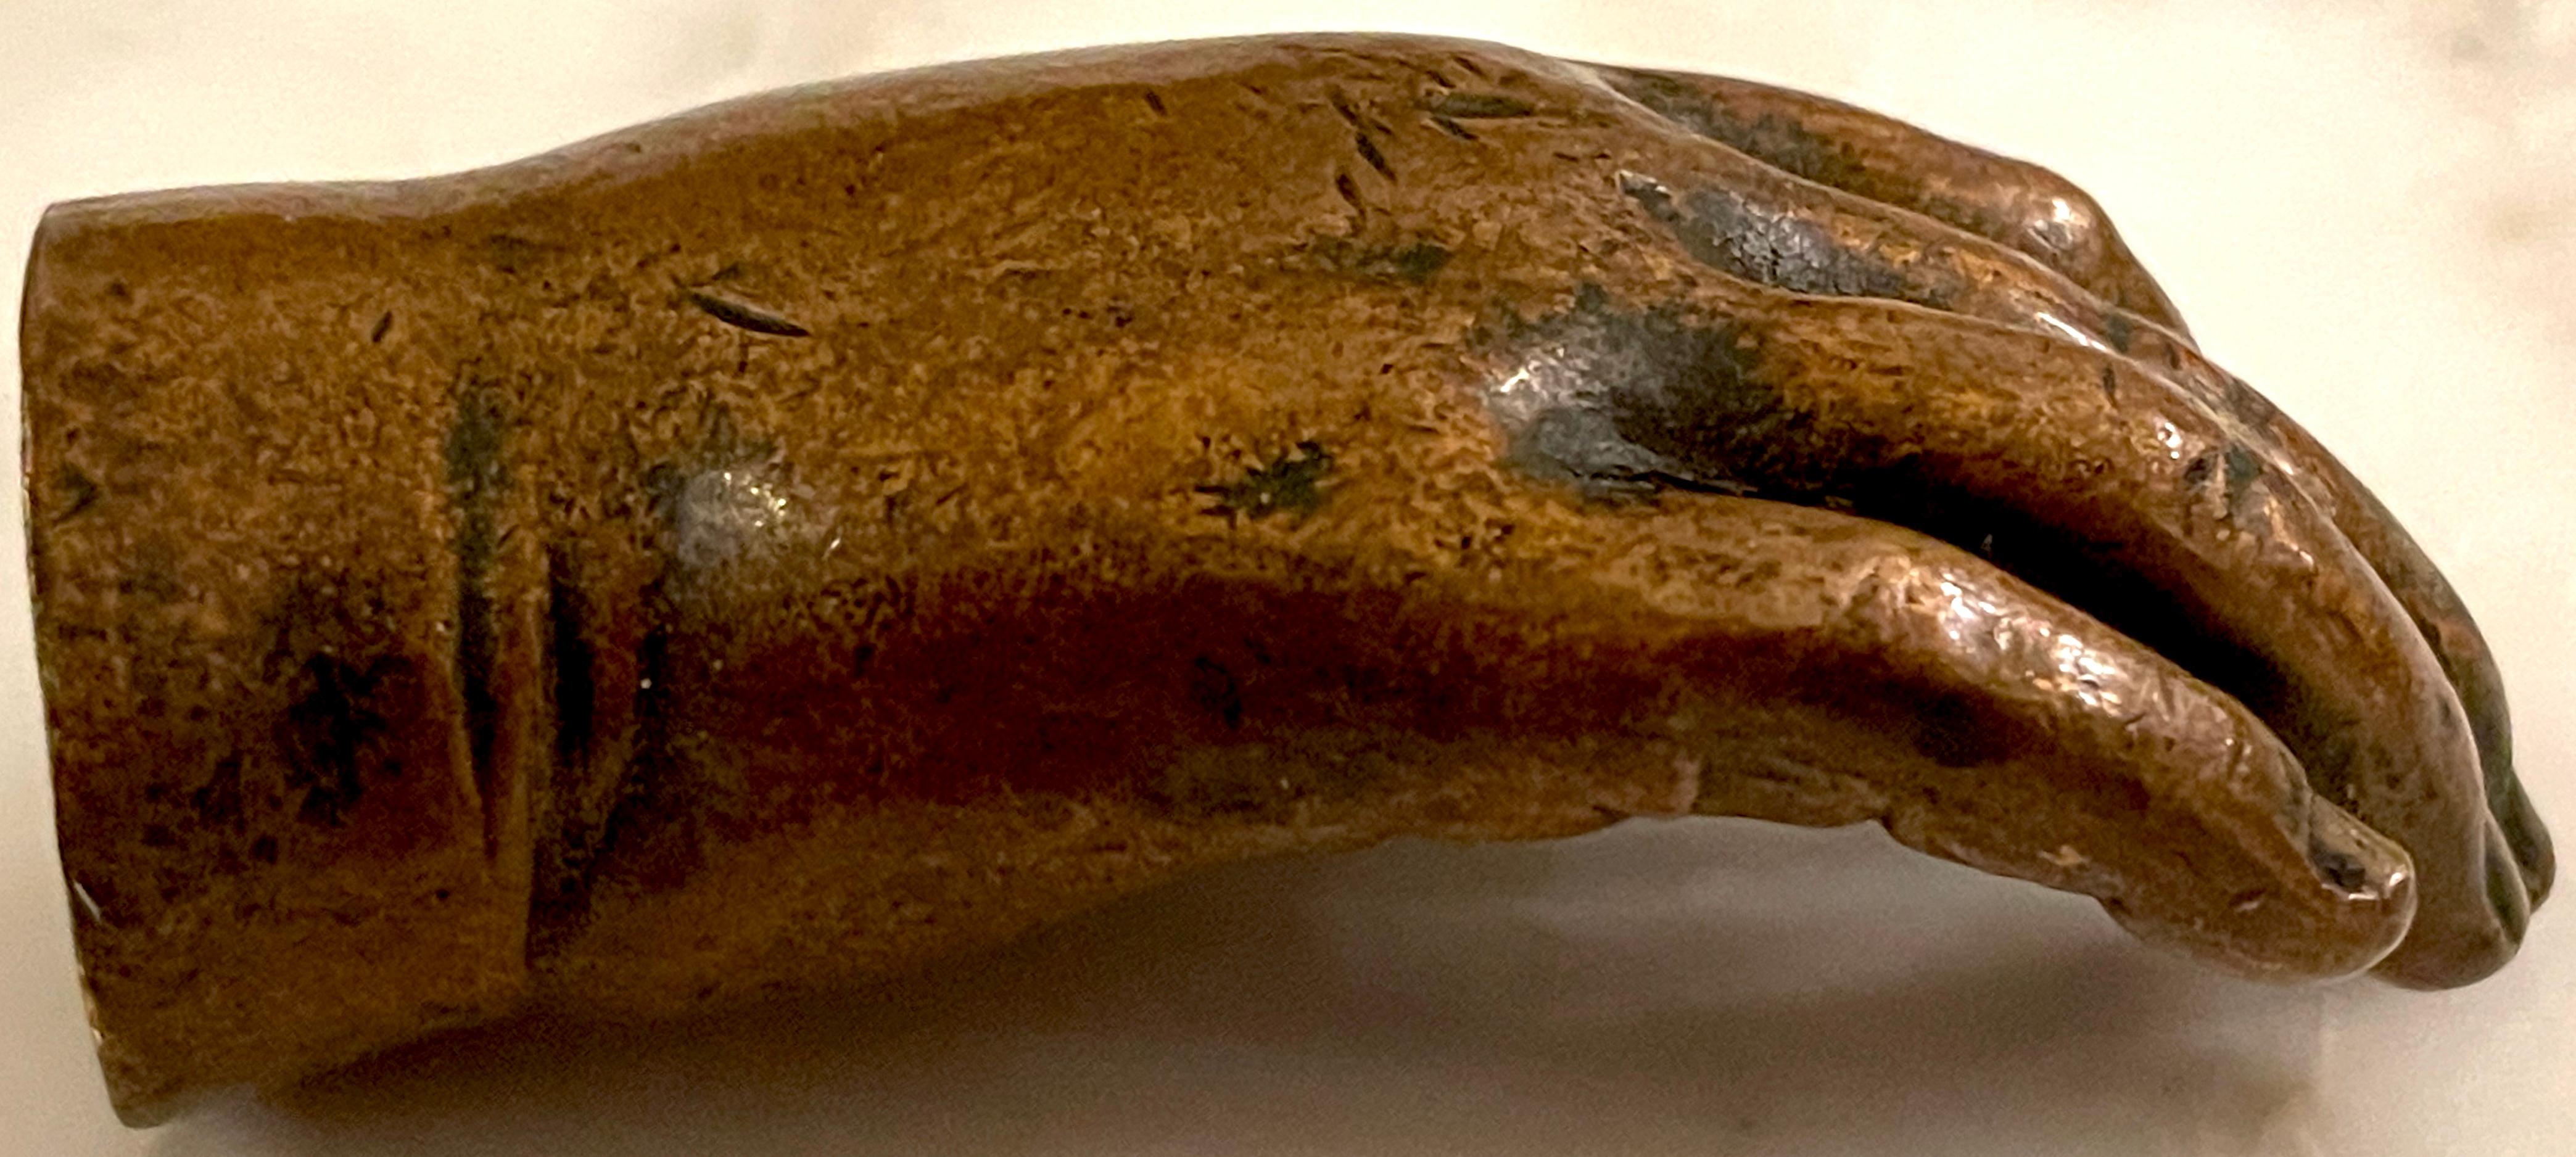 19. Jahrhundert.  Bronze Anatomisches/Künstler Modell/SSkulptur einer Hand, signiert 'Brooks'. 
USA, um 1875, signiert und beschriftet 'Brooks'.

Diese bemerkenswerte amerikanische Bronzeskulptur aus dem 19. Jahrhundert ist eine fesselnde Mischung